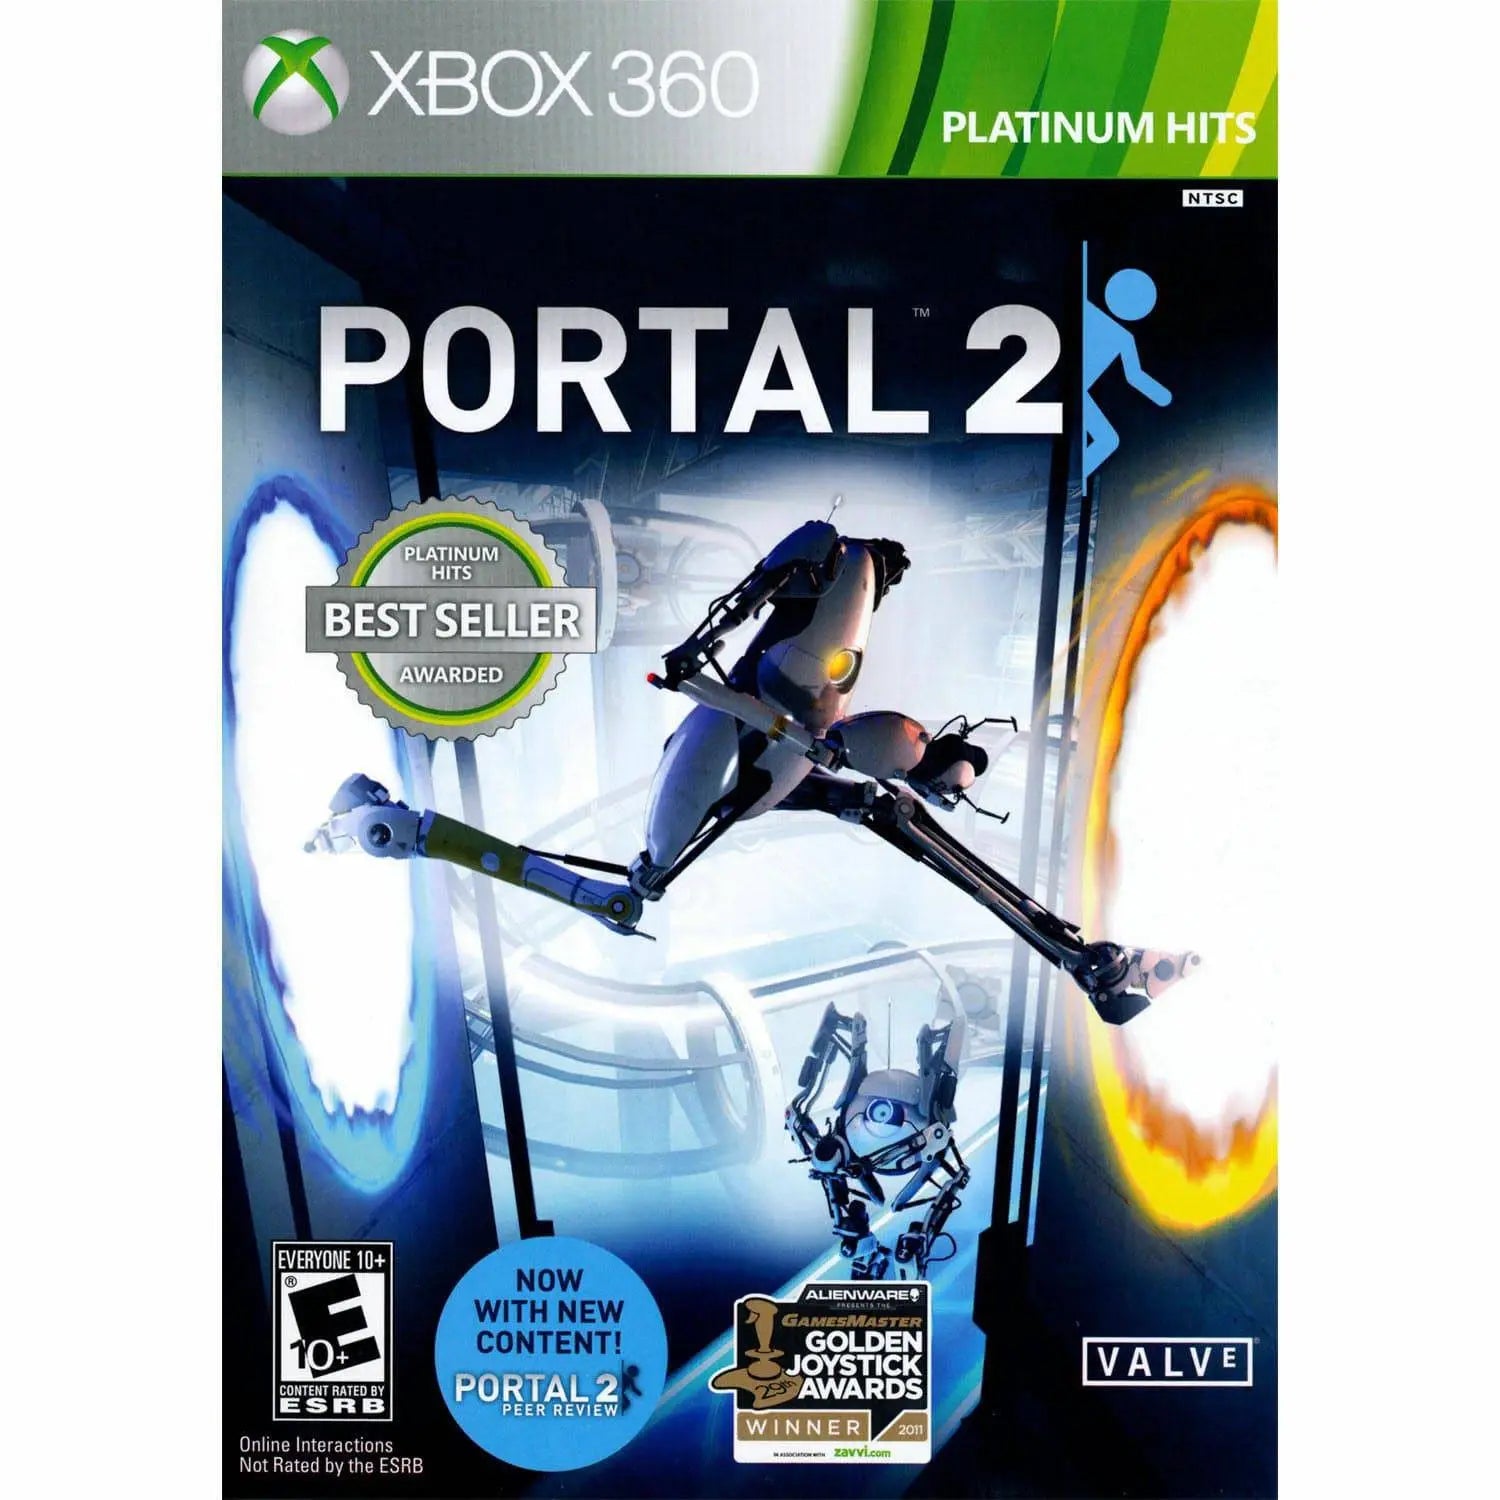 PORTAL 2 PLATNUIM HITS - Xbox 360 - Used King Gaming